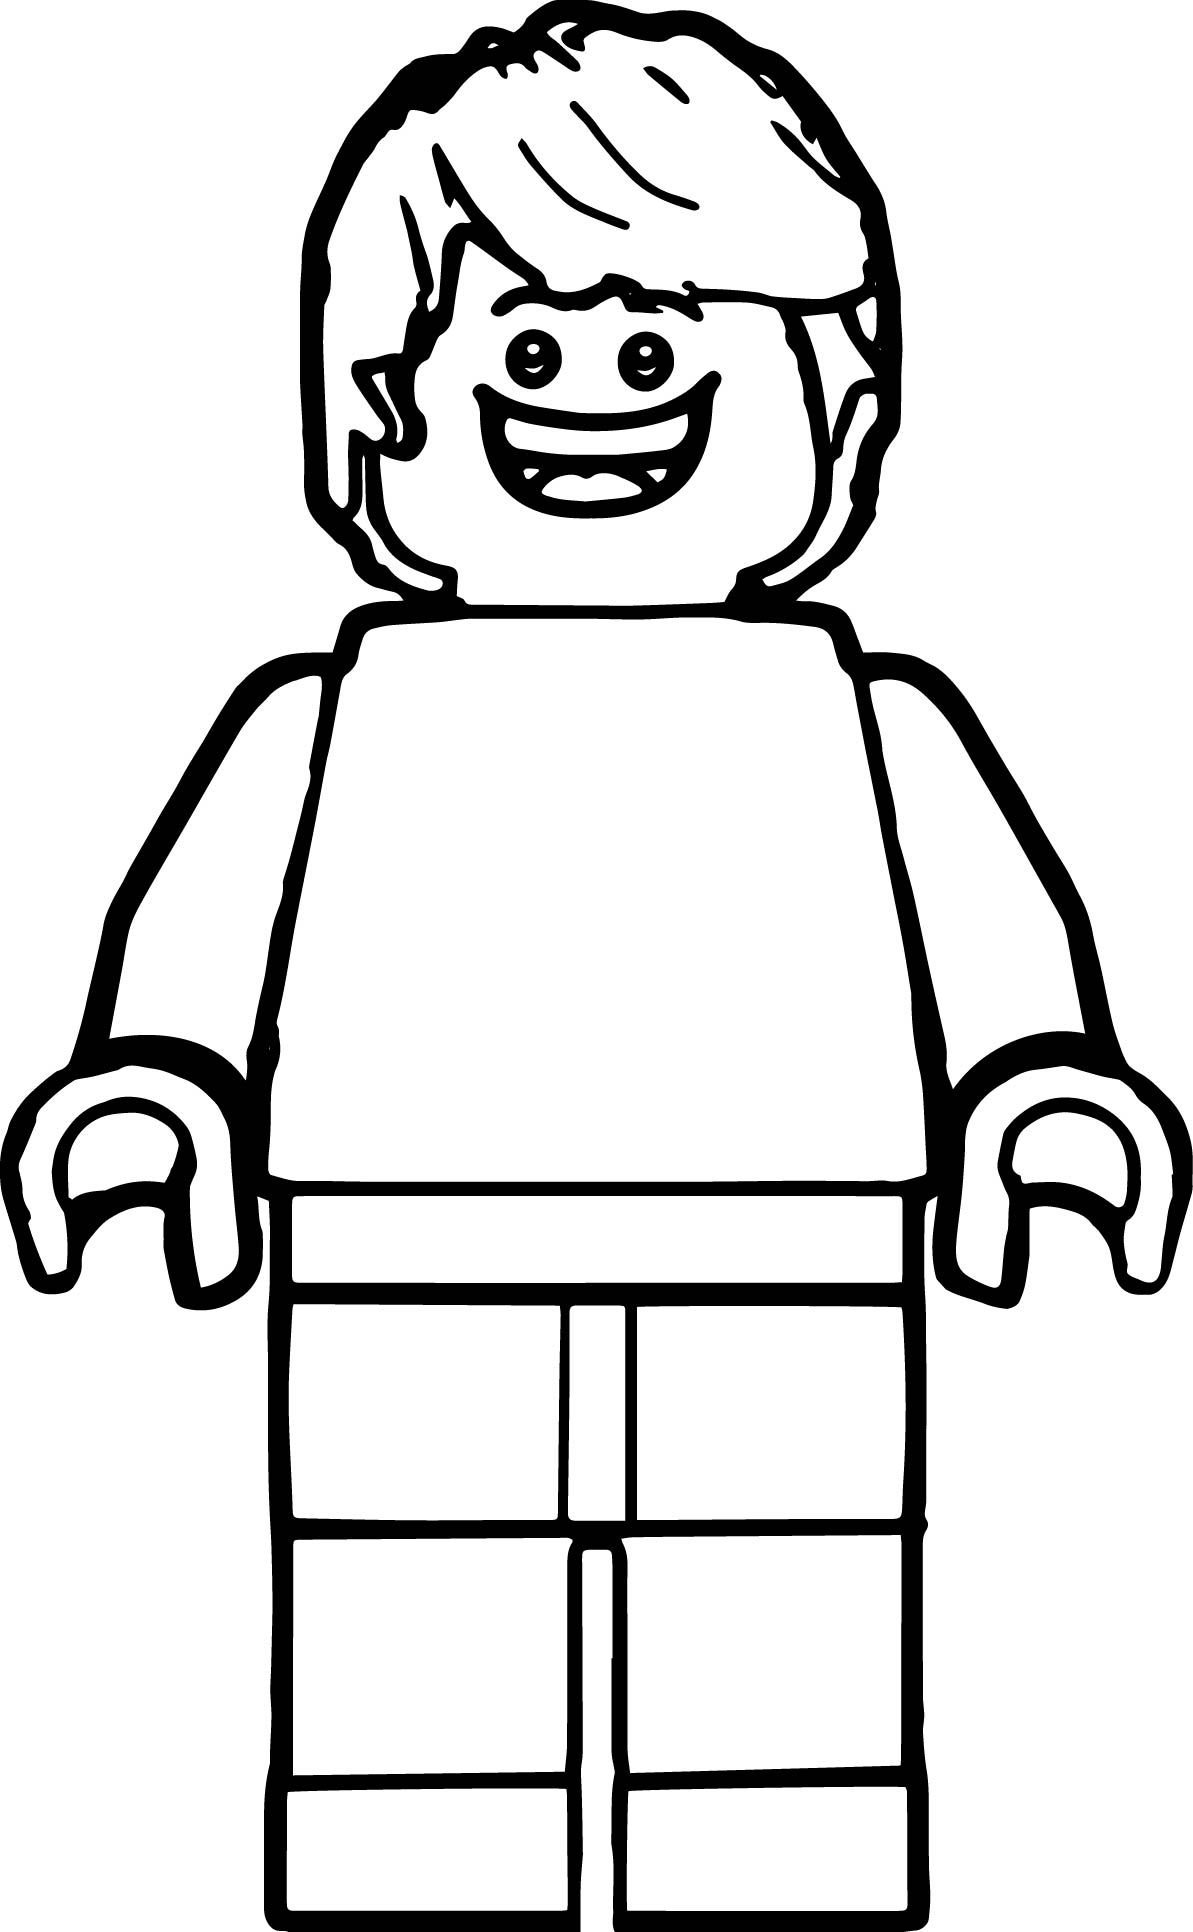 Лего человек раскраска